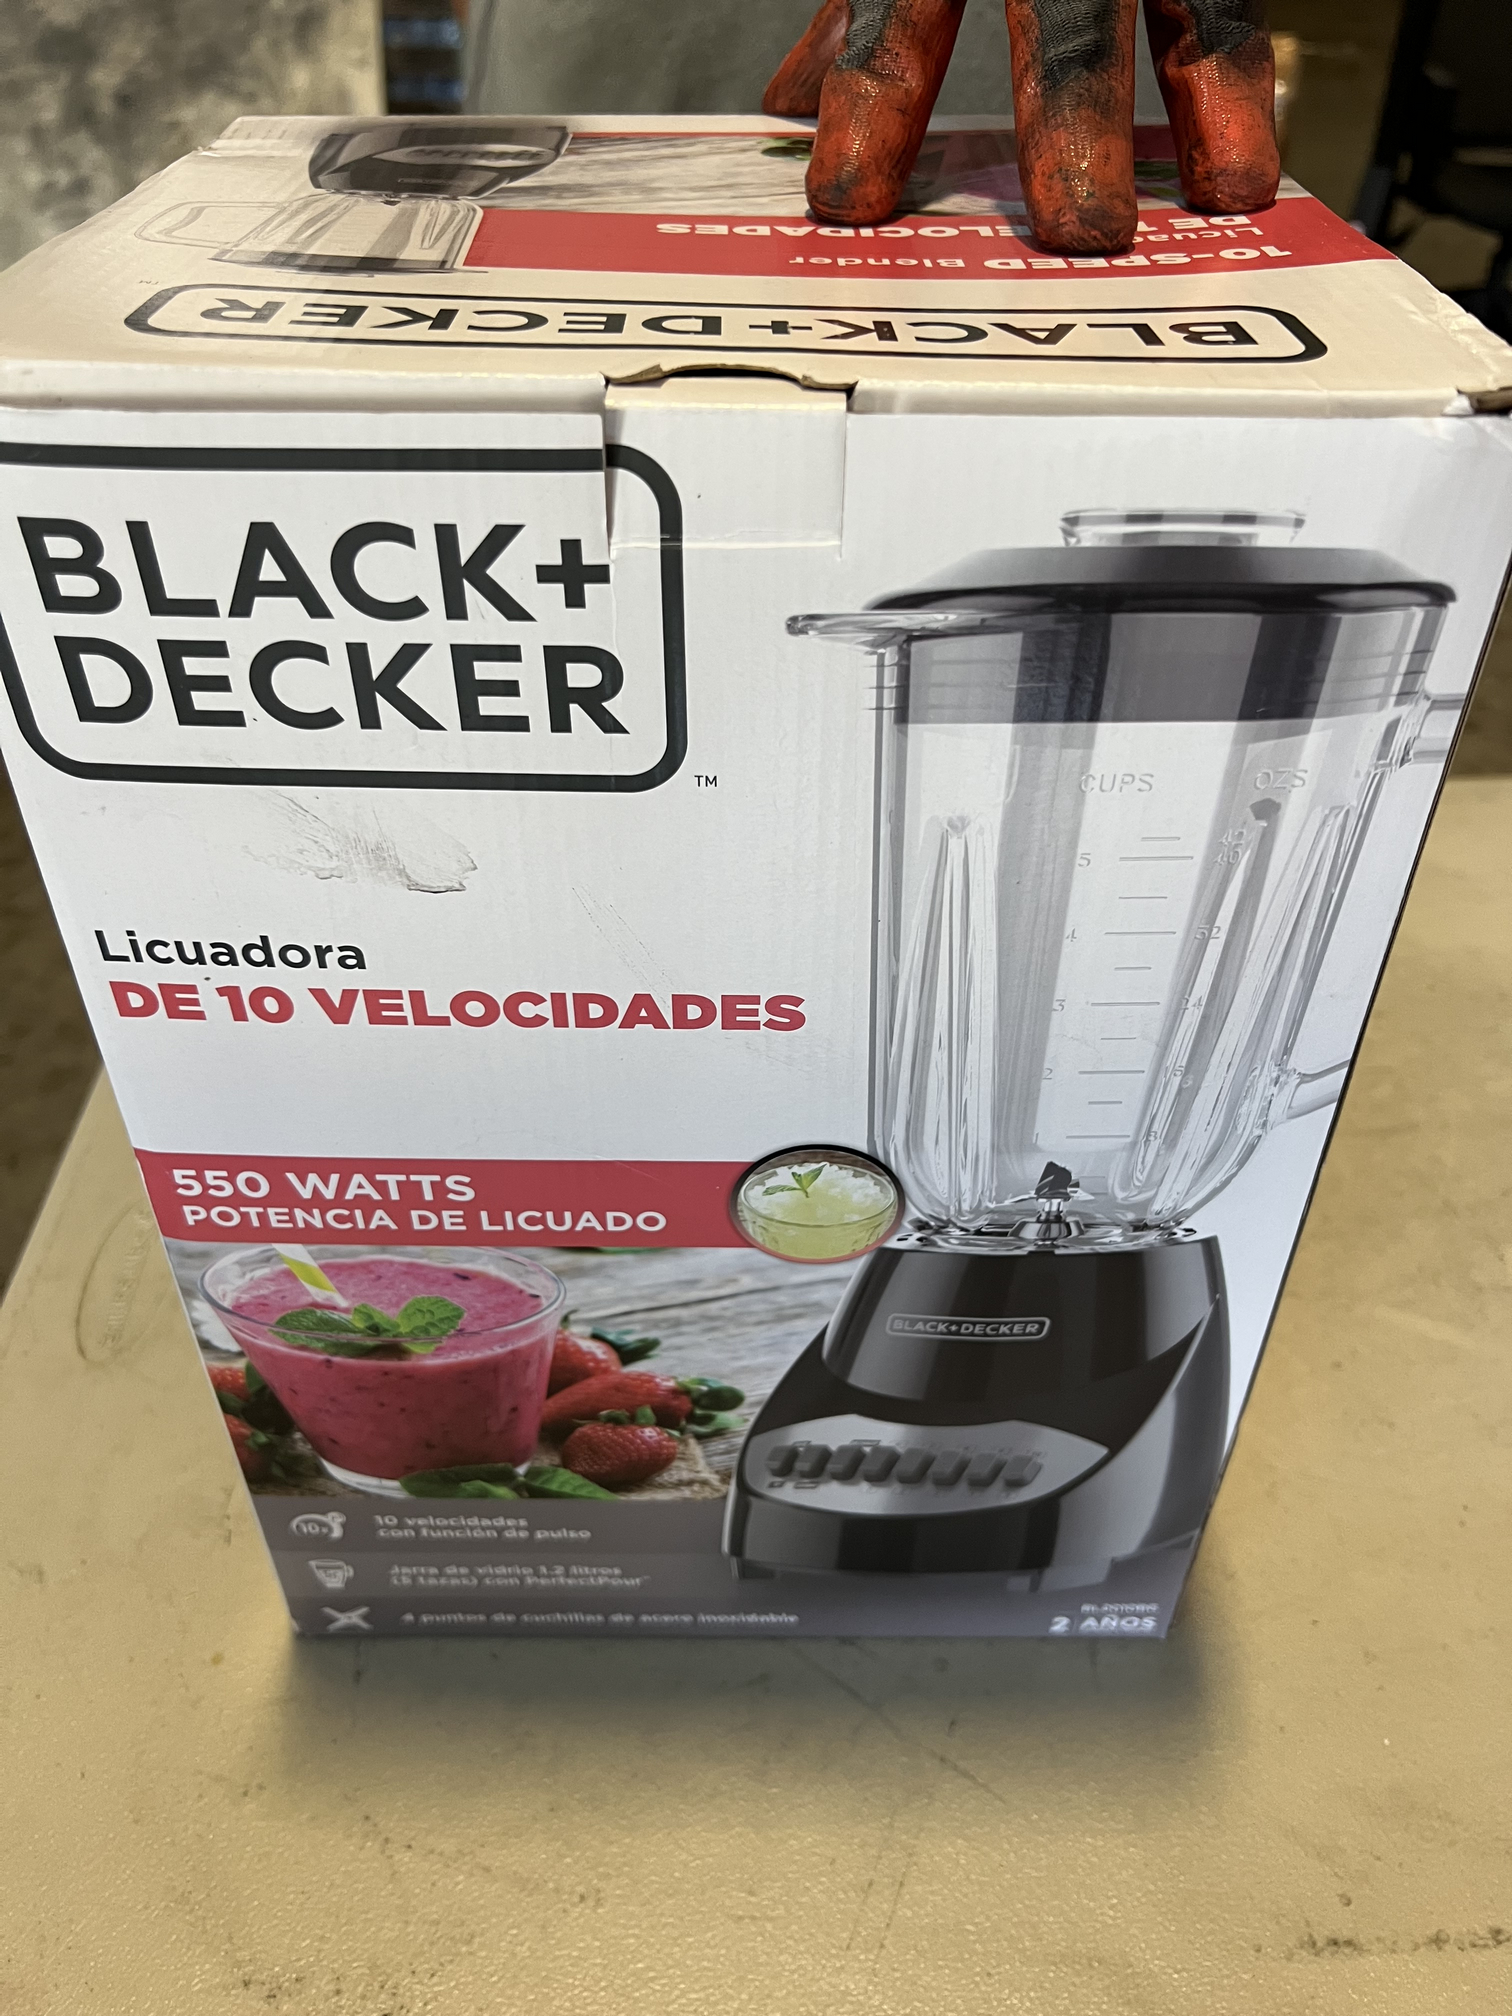 Black & Decker 10 Speed Blender